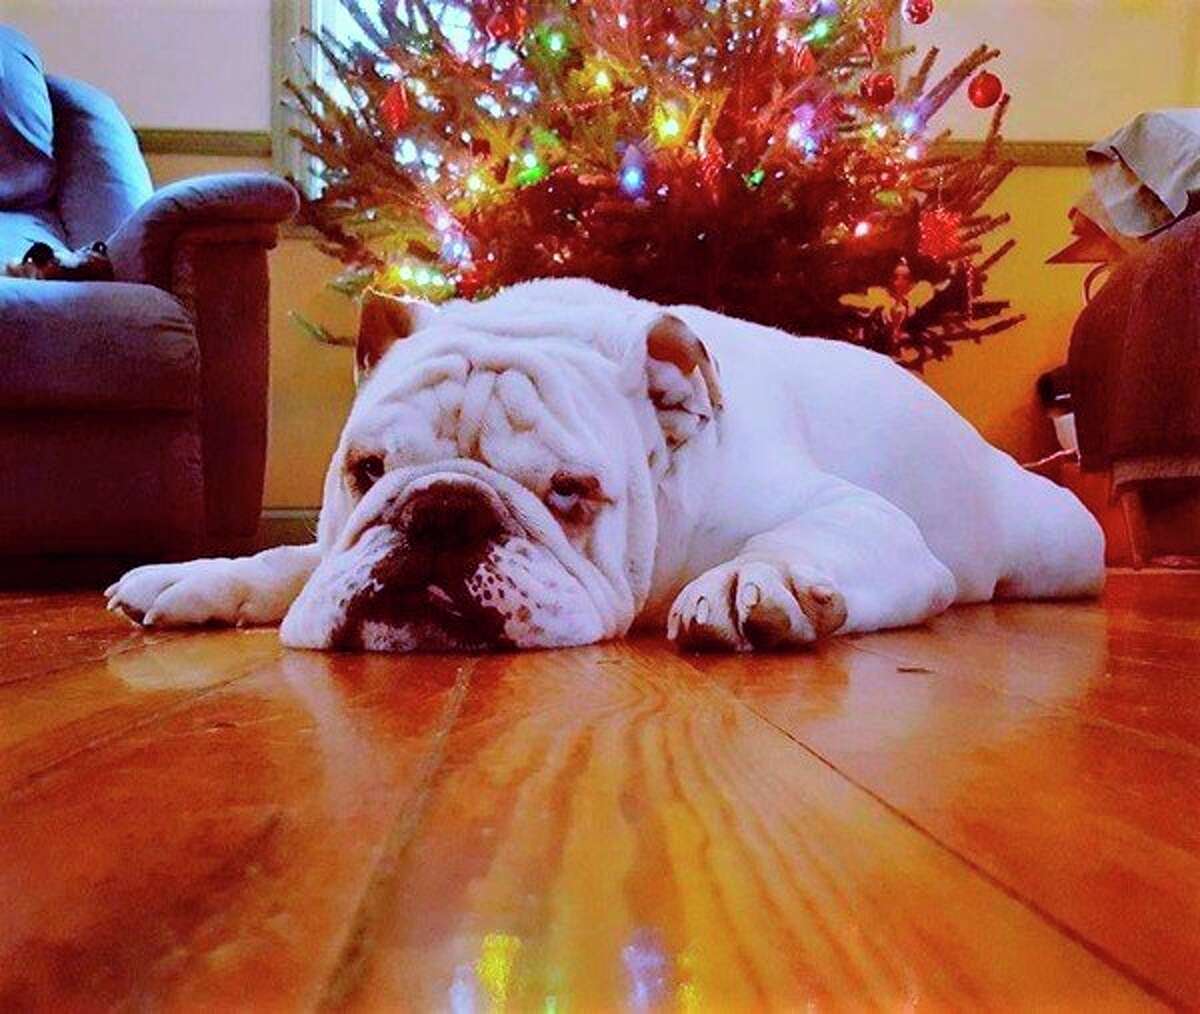 A bulldog feels festive as Christmas nears. (Courtesy photo)